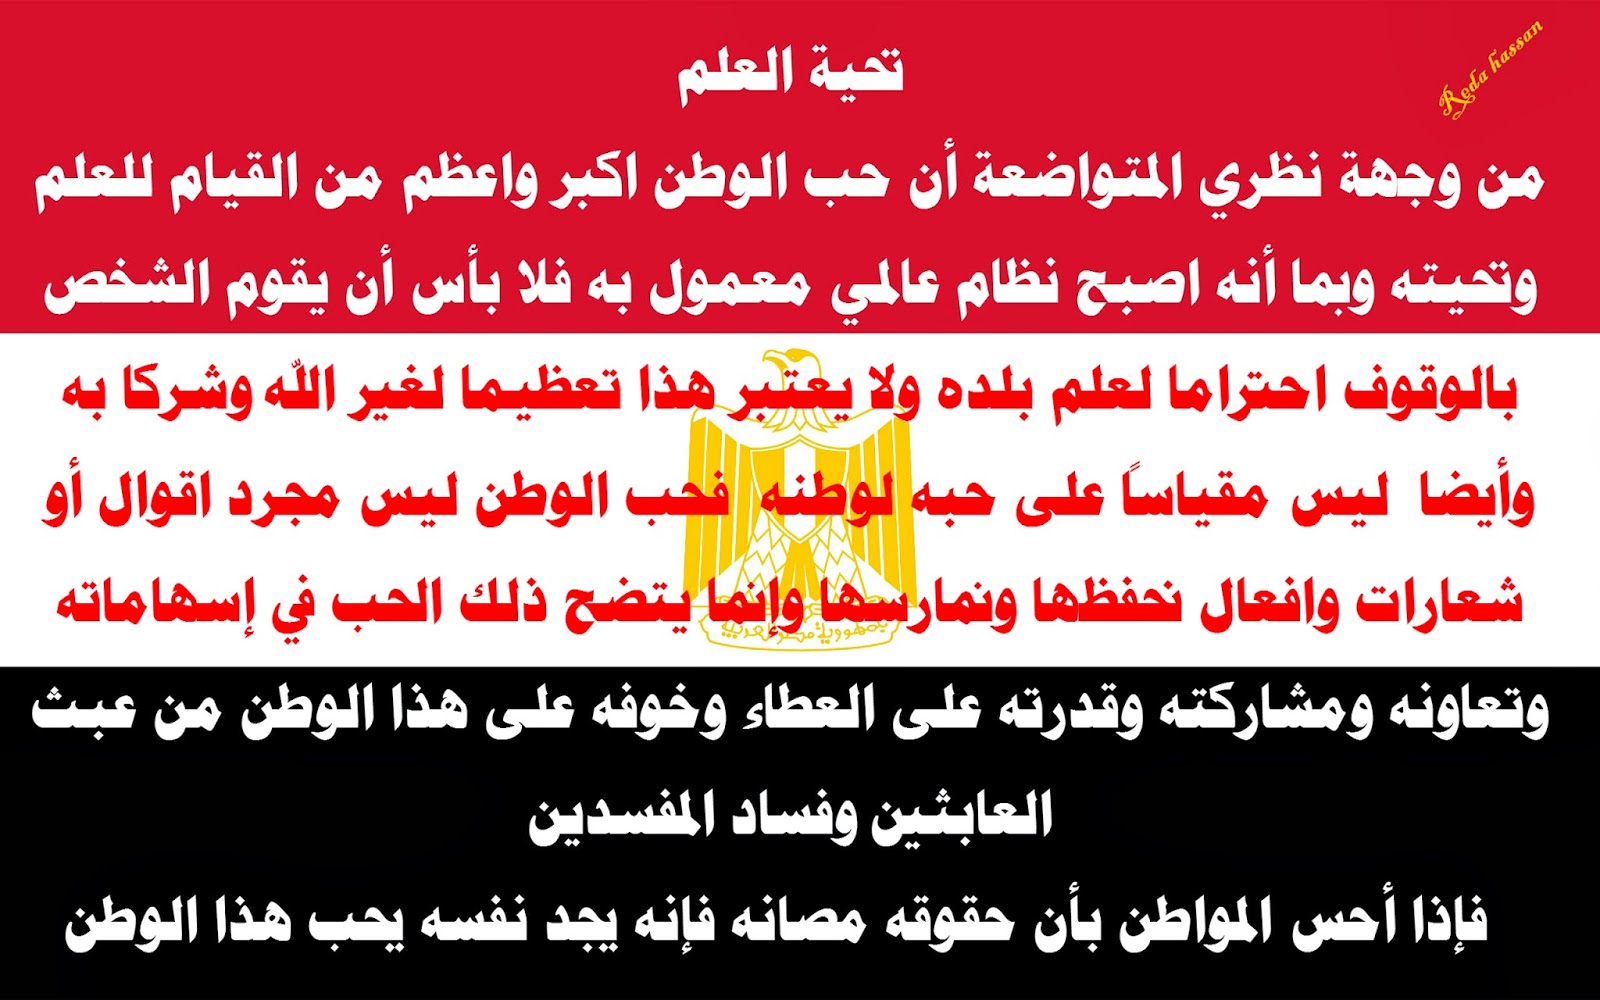 النشيد الوطني المصري في قطر